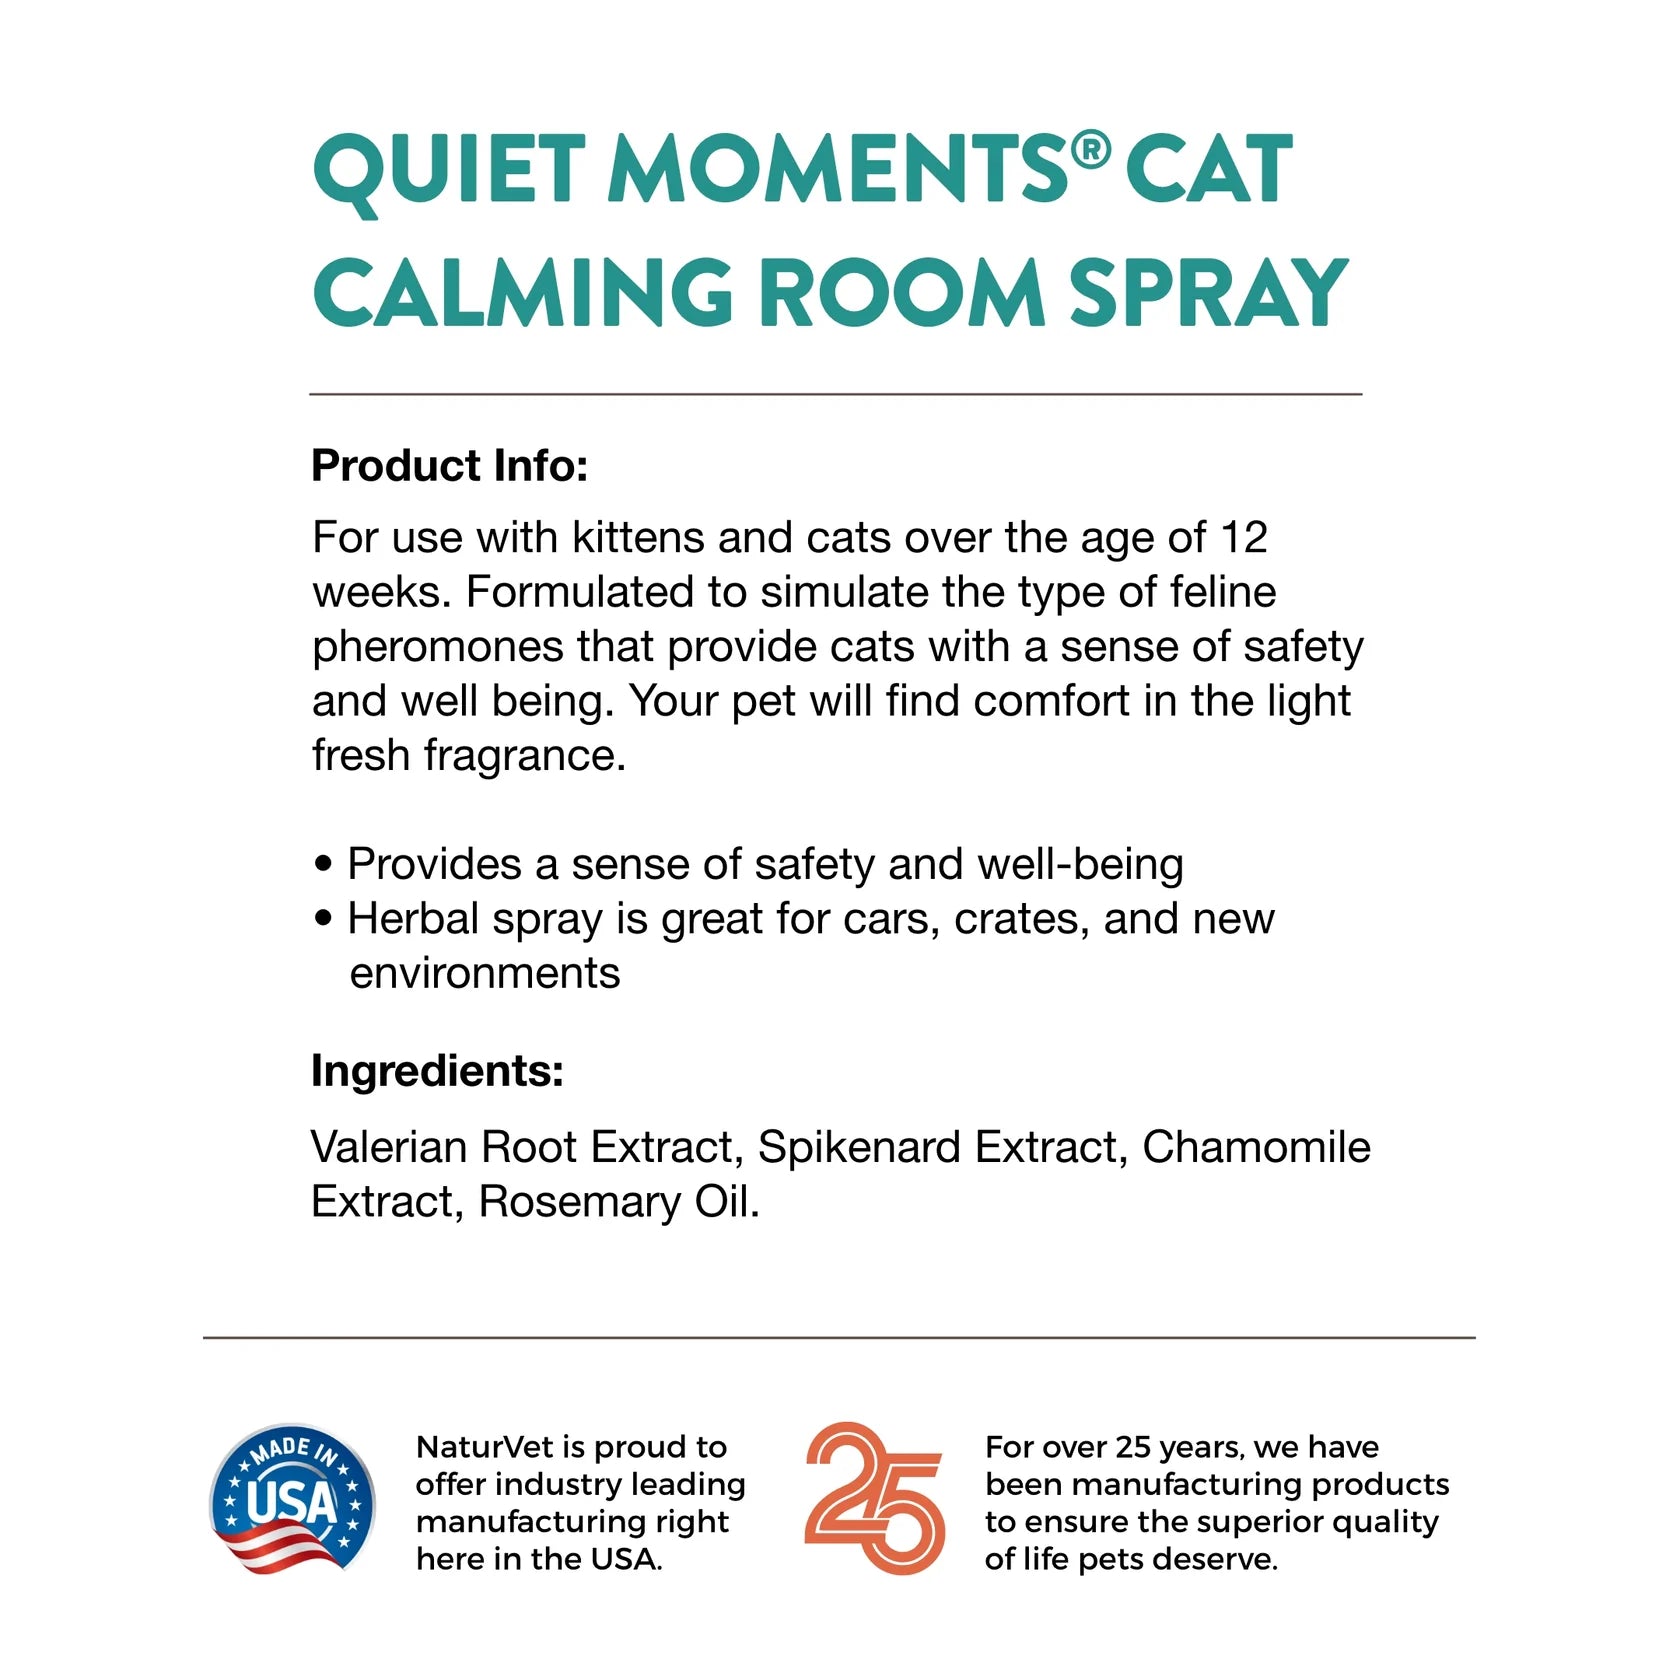 QUIET MOMENTS® CAT CALMING ROOM SPRAY